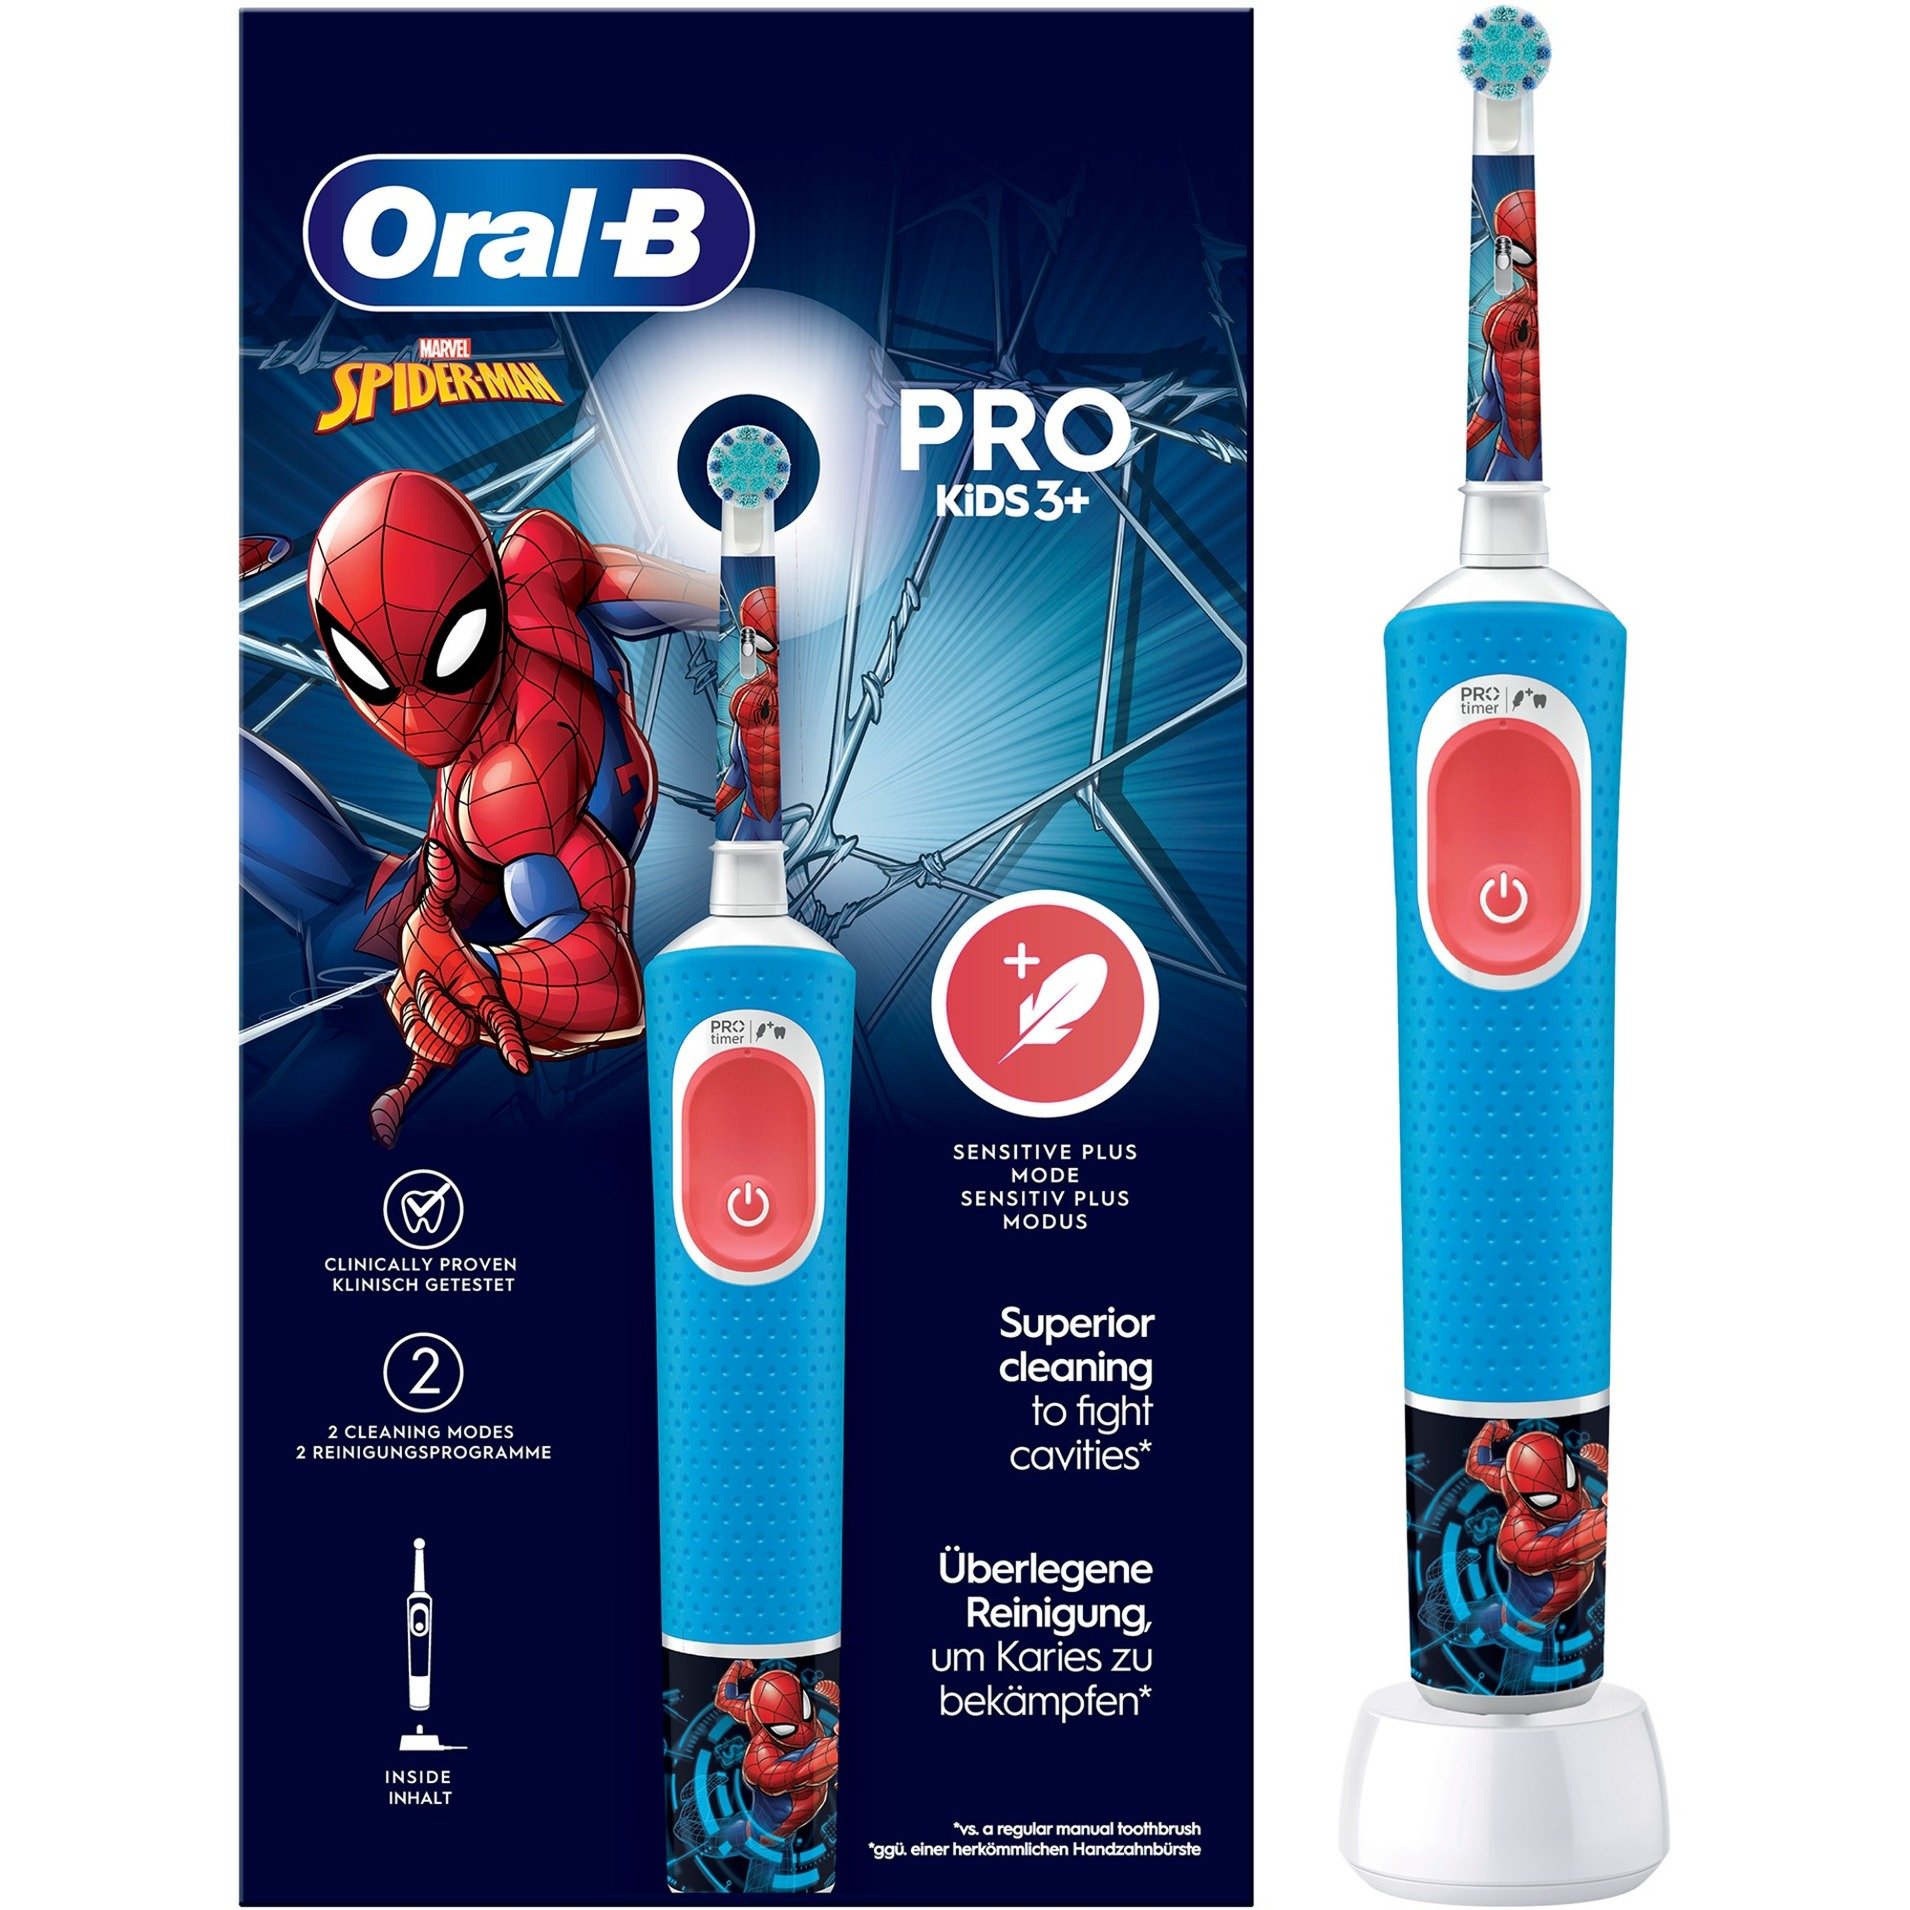 Oral-B Kids Pro 103 Spiderman Elektrische Zahnbürste/Electric Toothbrush für Kinder ab 3 Jahren, 2 Putzmodi für Zahnpflege, extra weiche Borsten, 4 Sticker, blau (Design kann variieren)